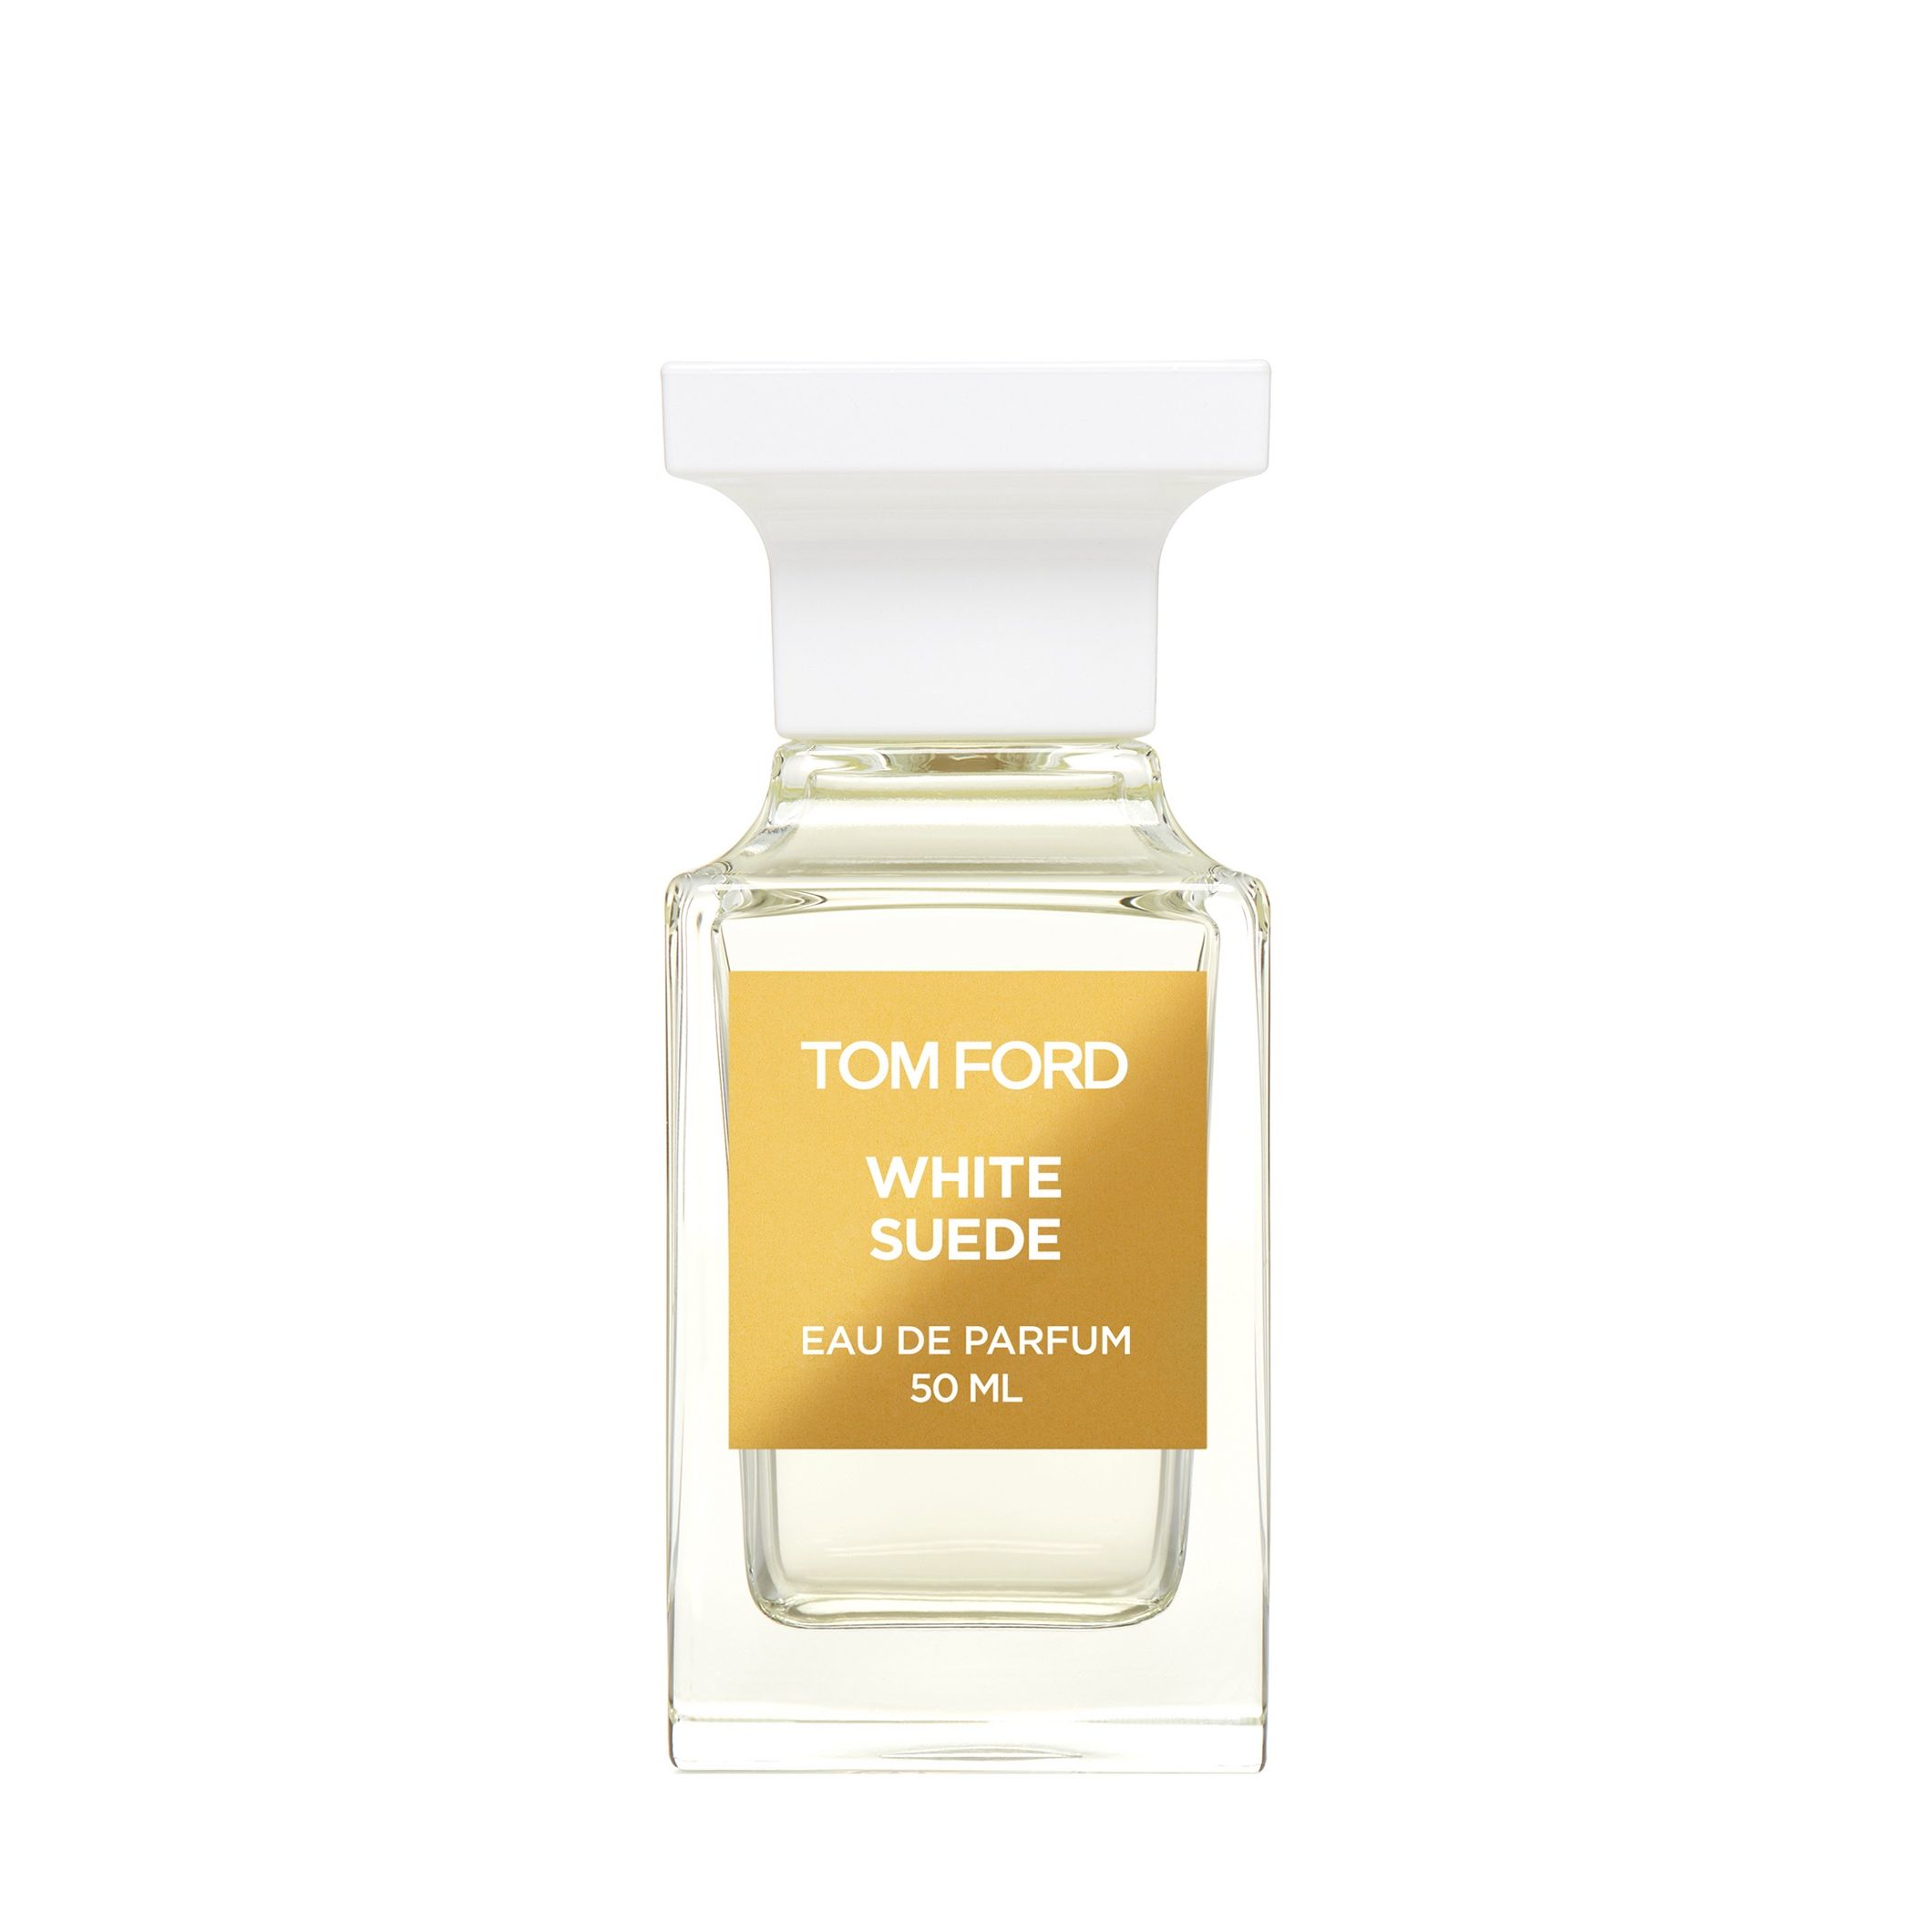 Вода парфюмерная Tom Ford White Suede, унисекс, 50 мл bio textiles халат вафельный унисекс white